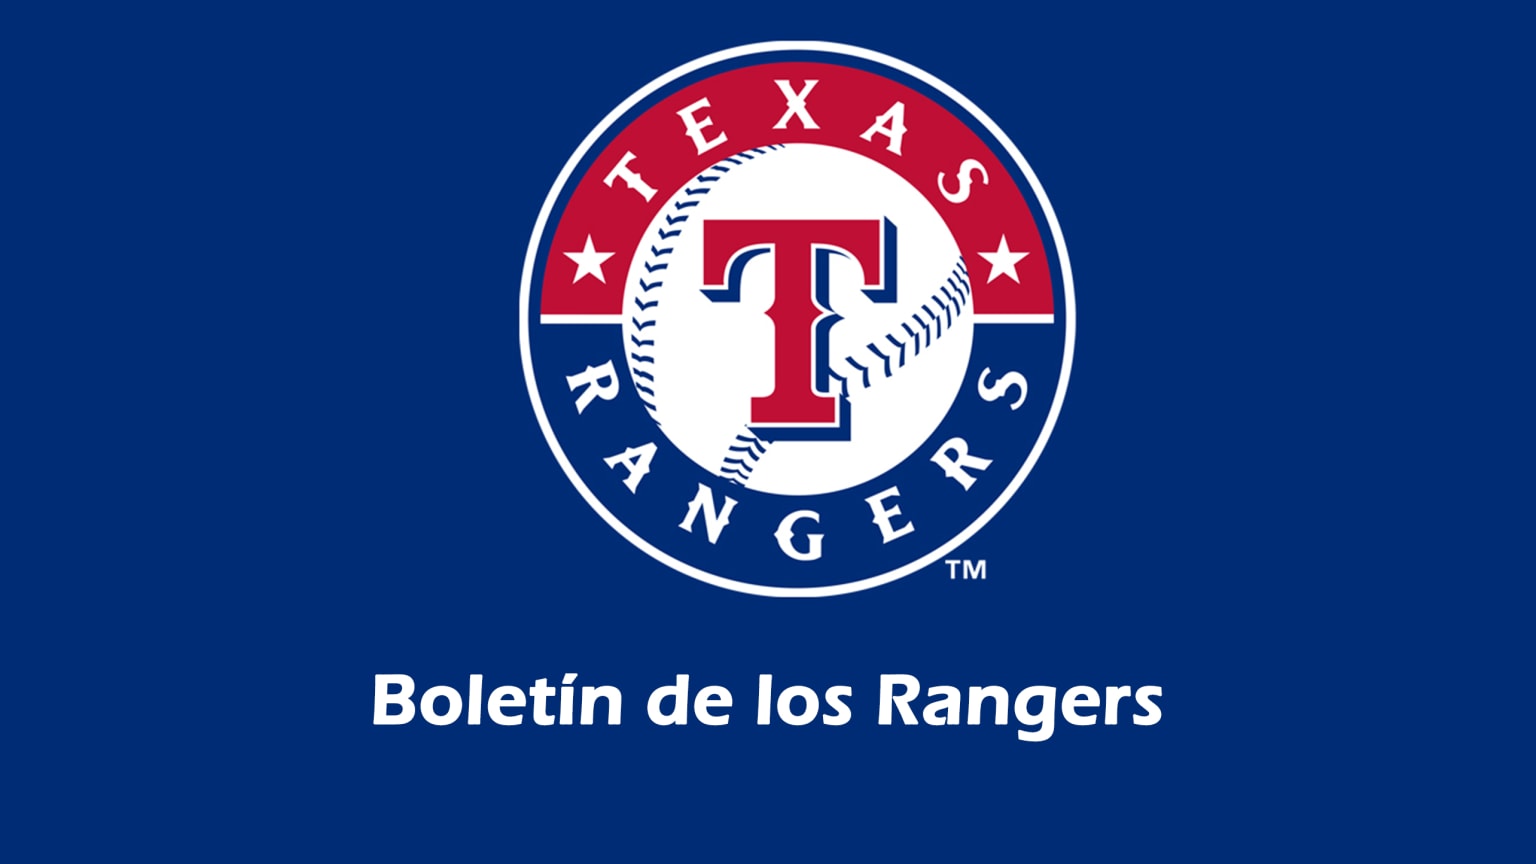 Los Rangers de Texas